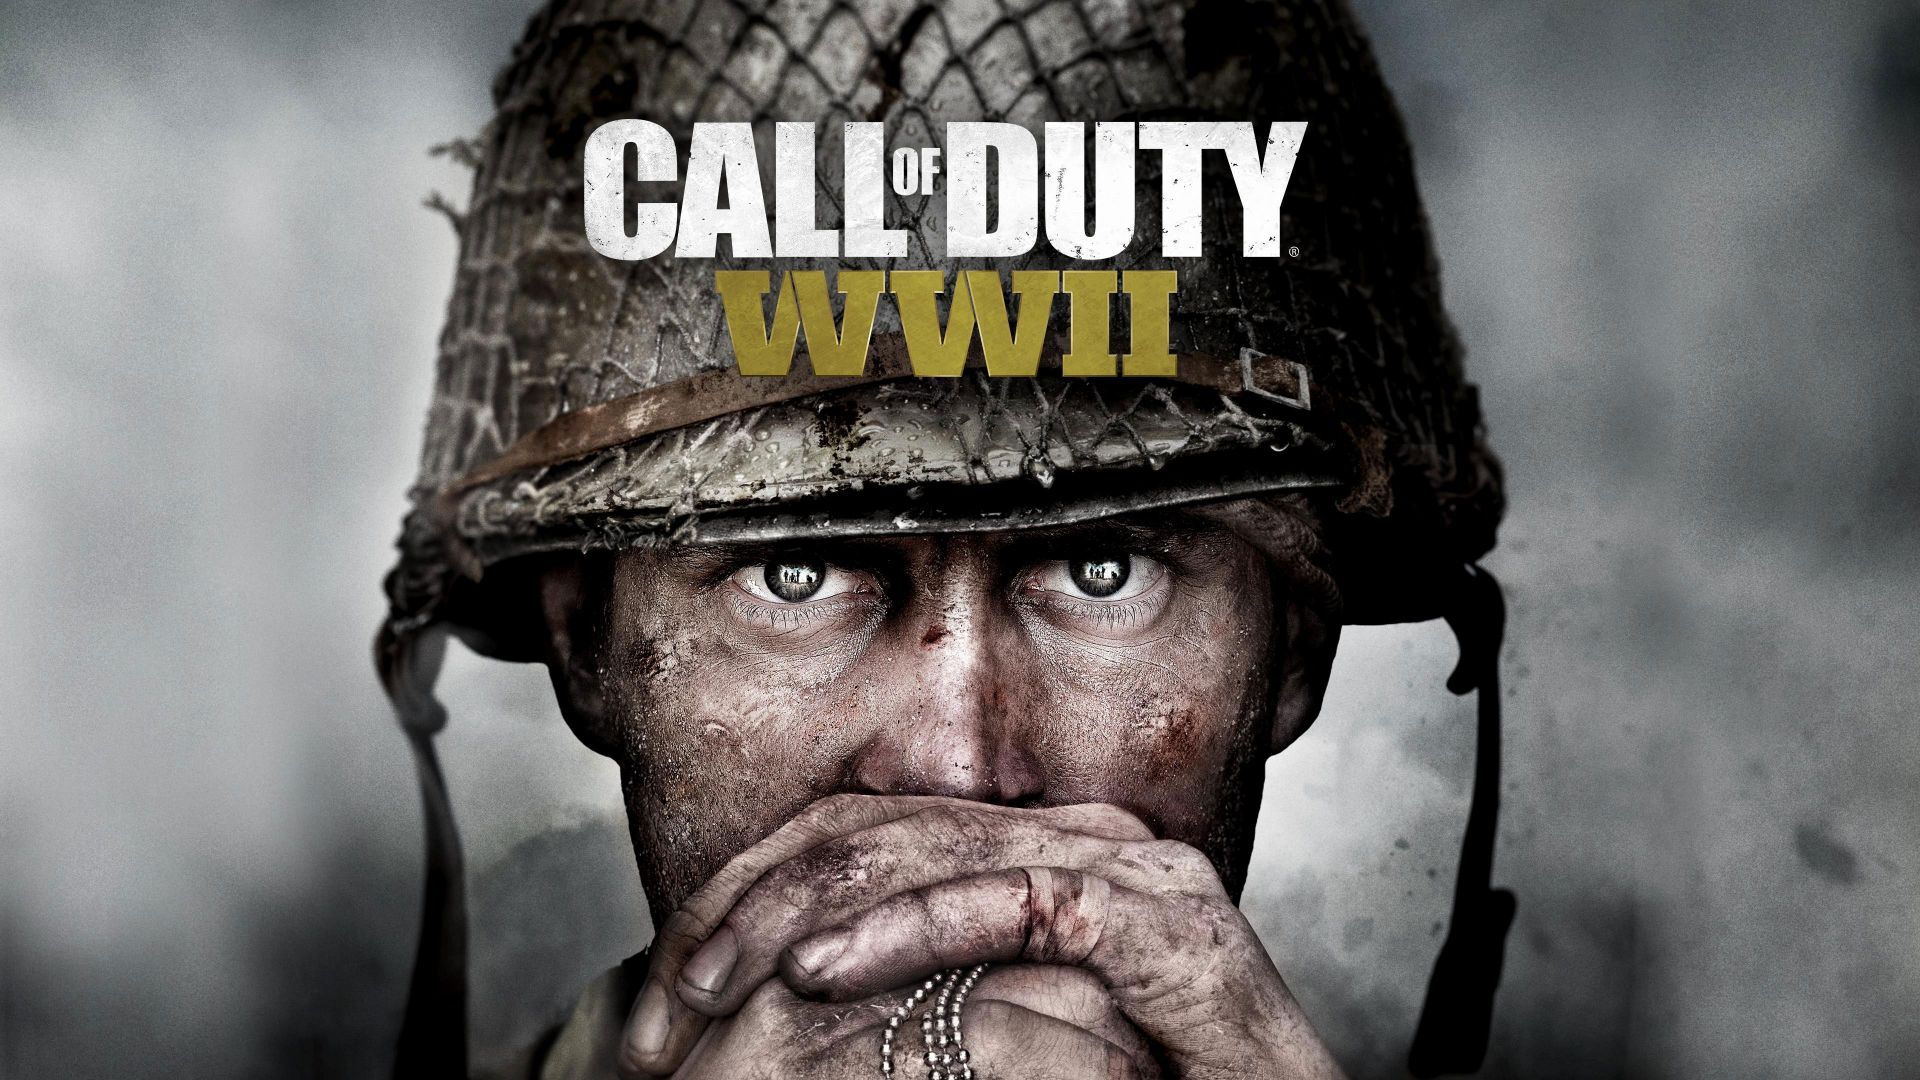 Call of Duty WWII  (1 часть, продолжение)